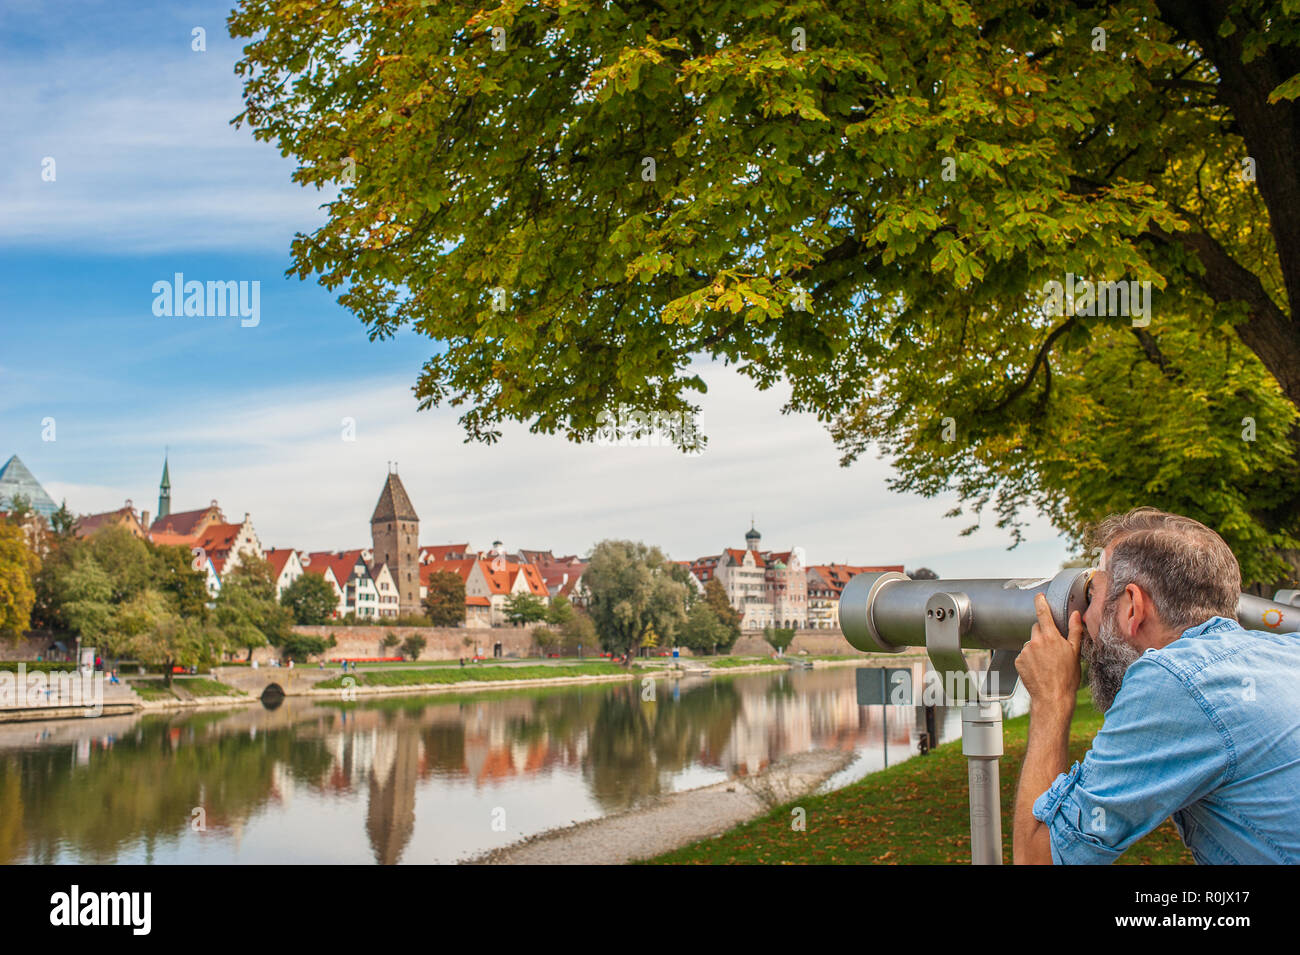 Vista panorámica del centro de la ciudad de Ulm, Alemania Foto de stock